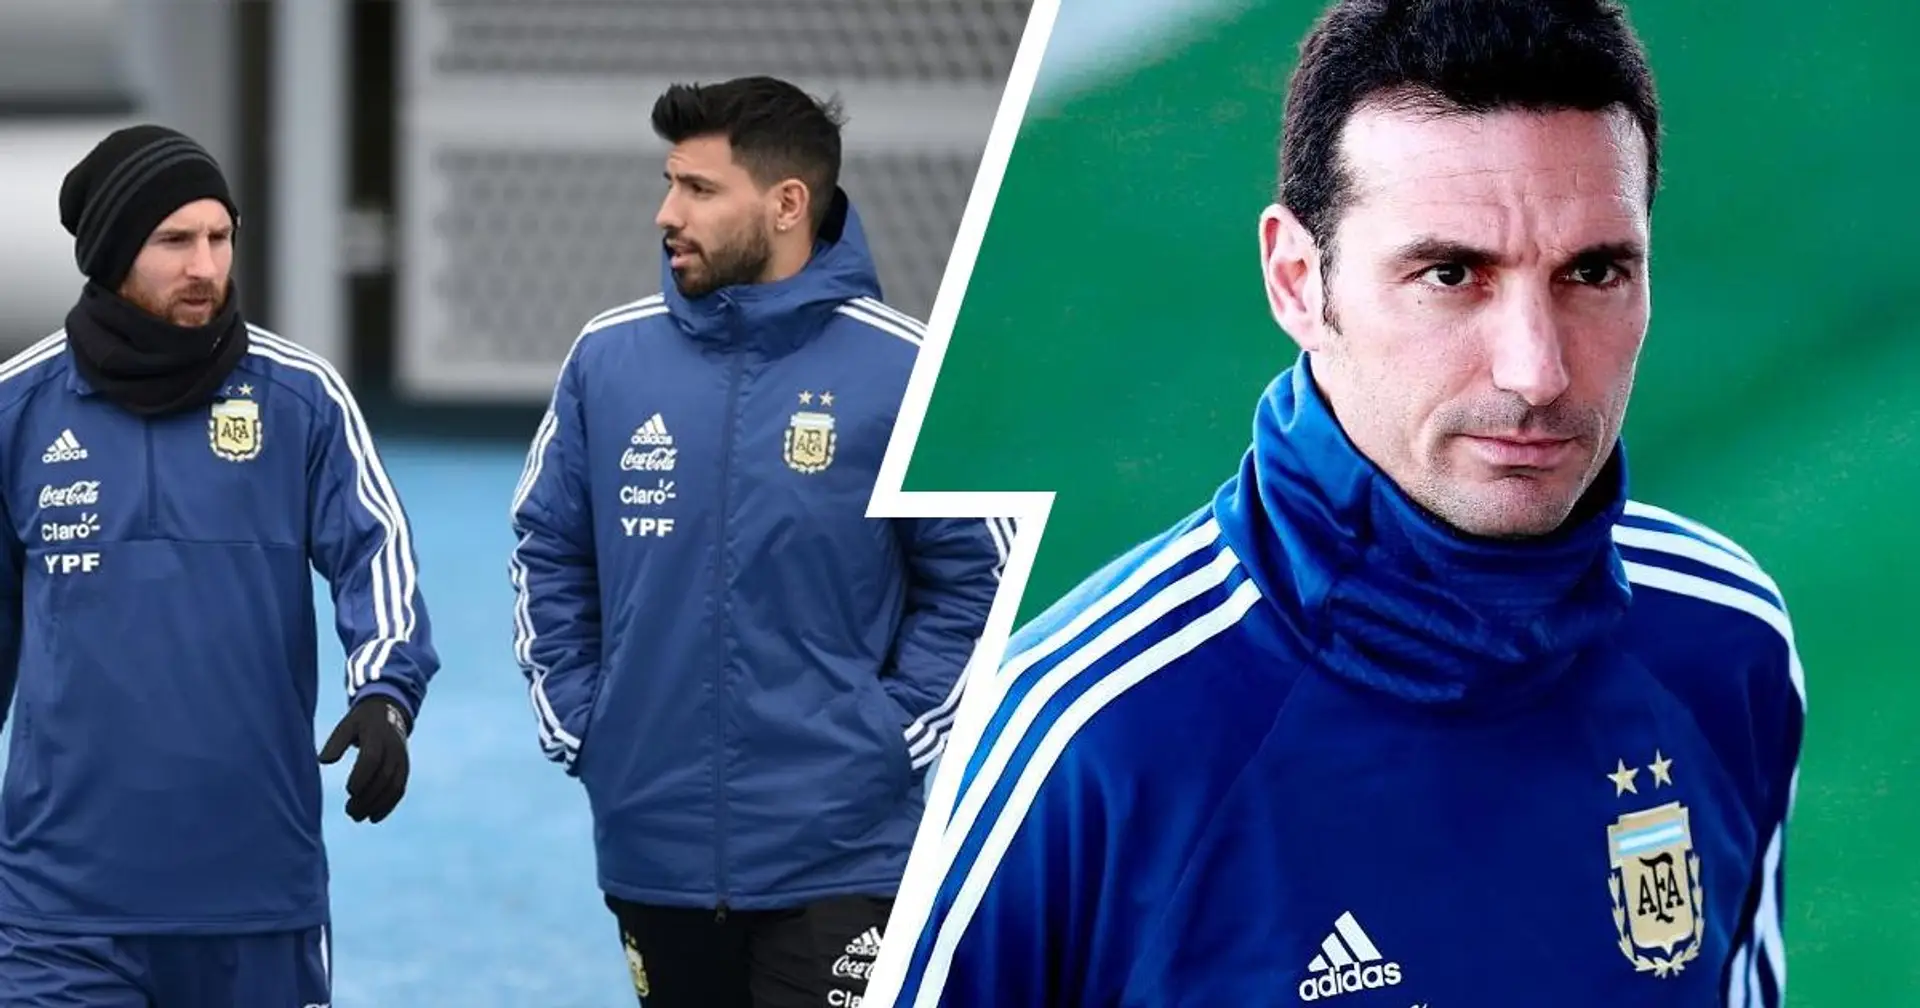 Scaloni teste Agüero: Le kun pourrait former un duo offensif avec Messi contre le Chili